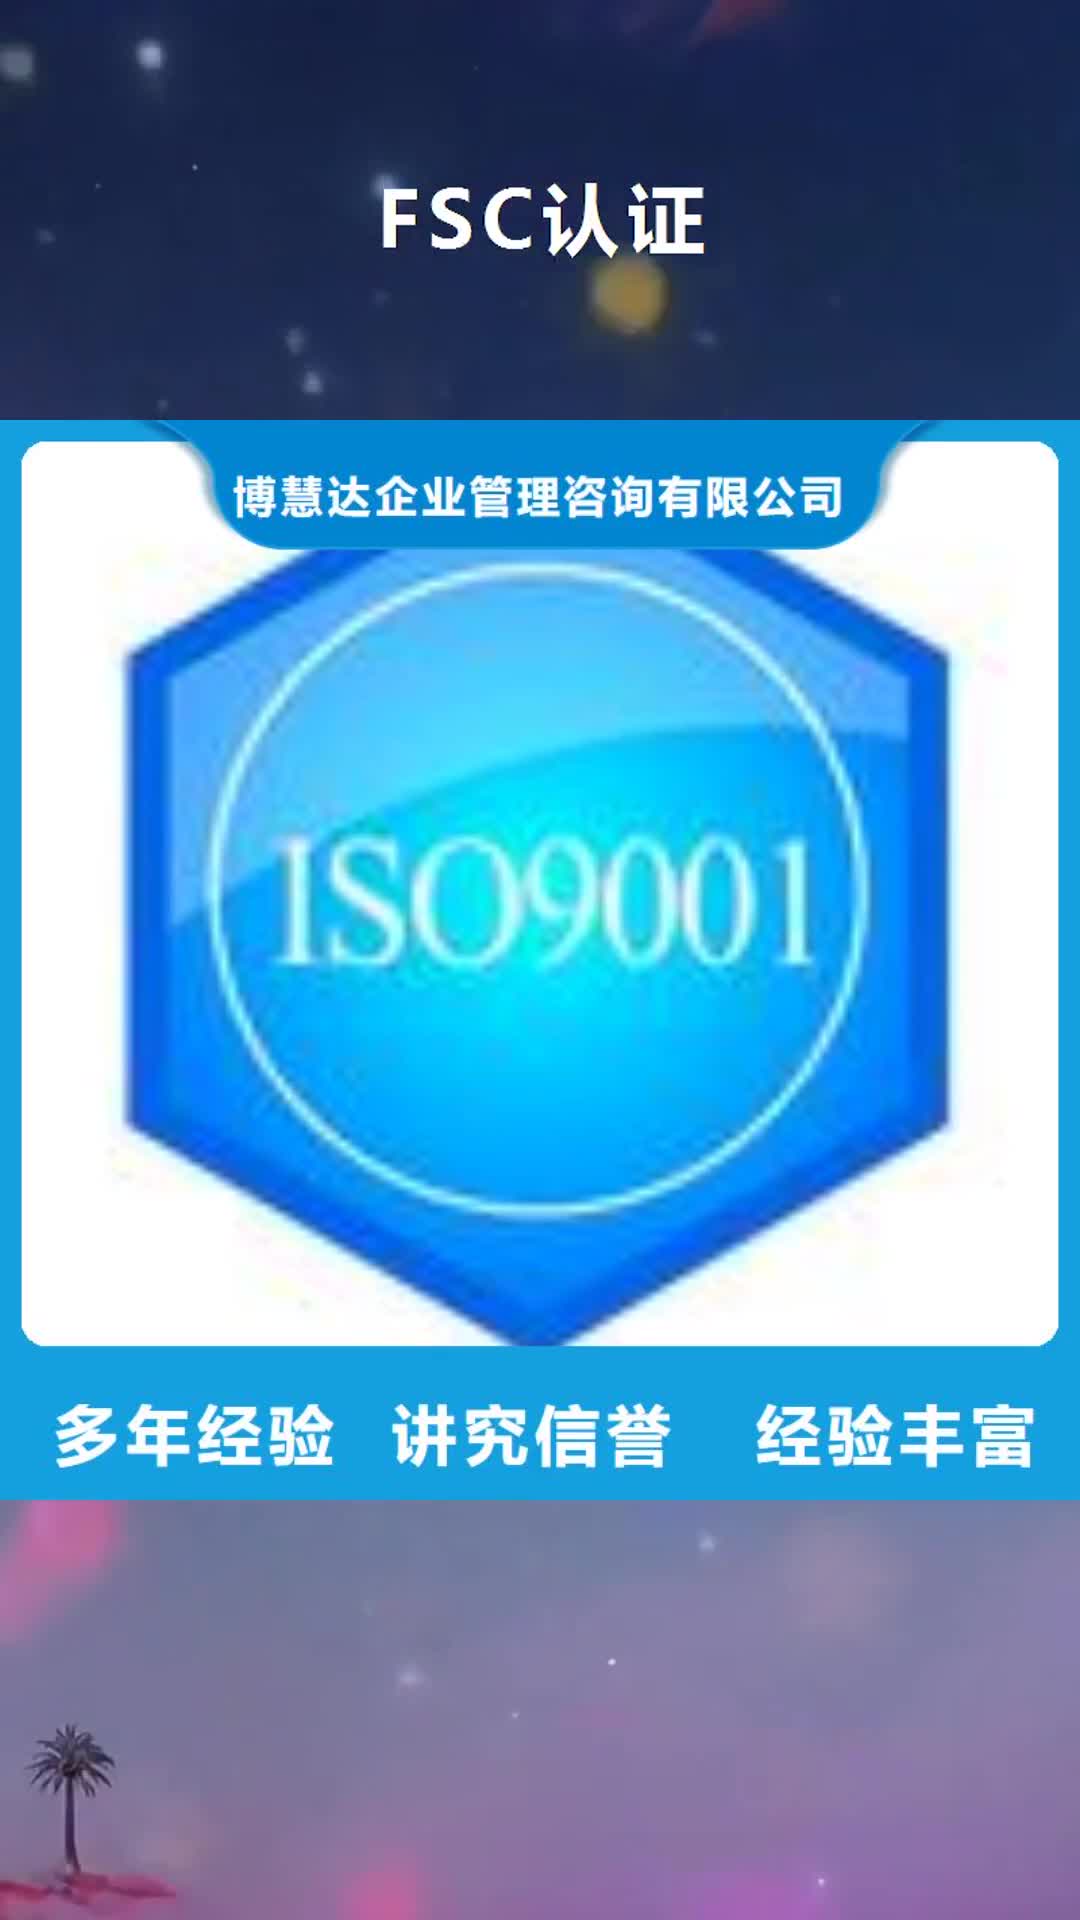 柳州 FSC认证 【ISO14000\ESD防静电认证】精英团队